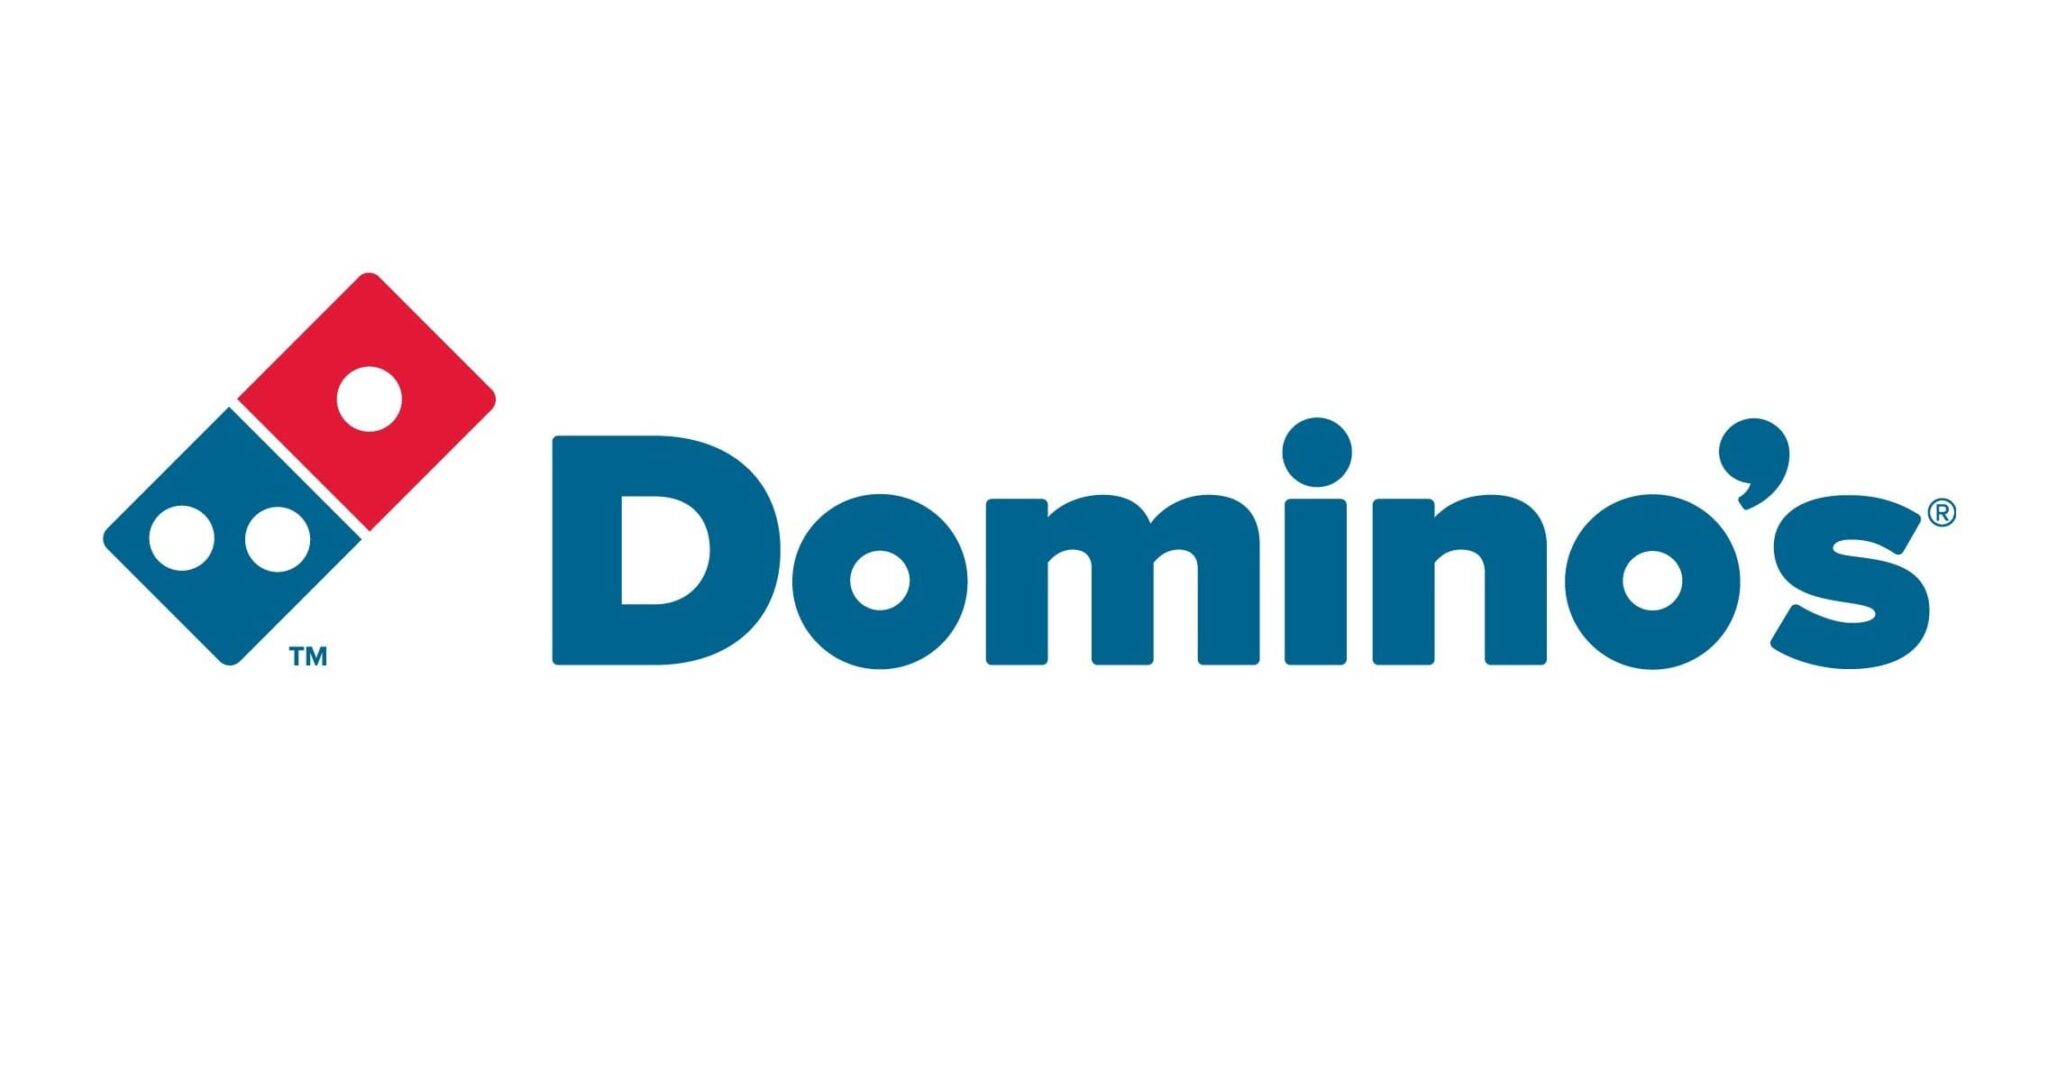 dominos new logo